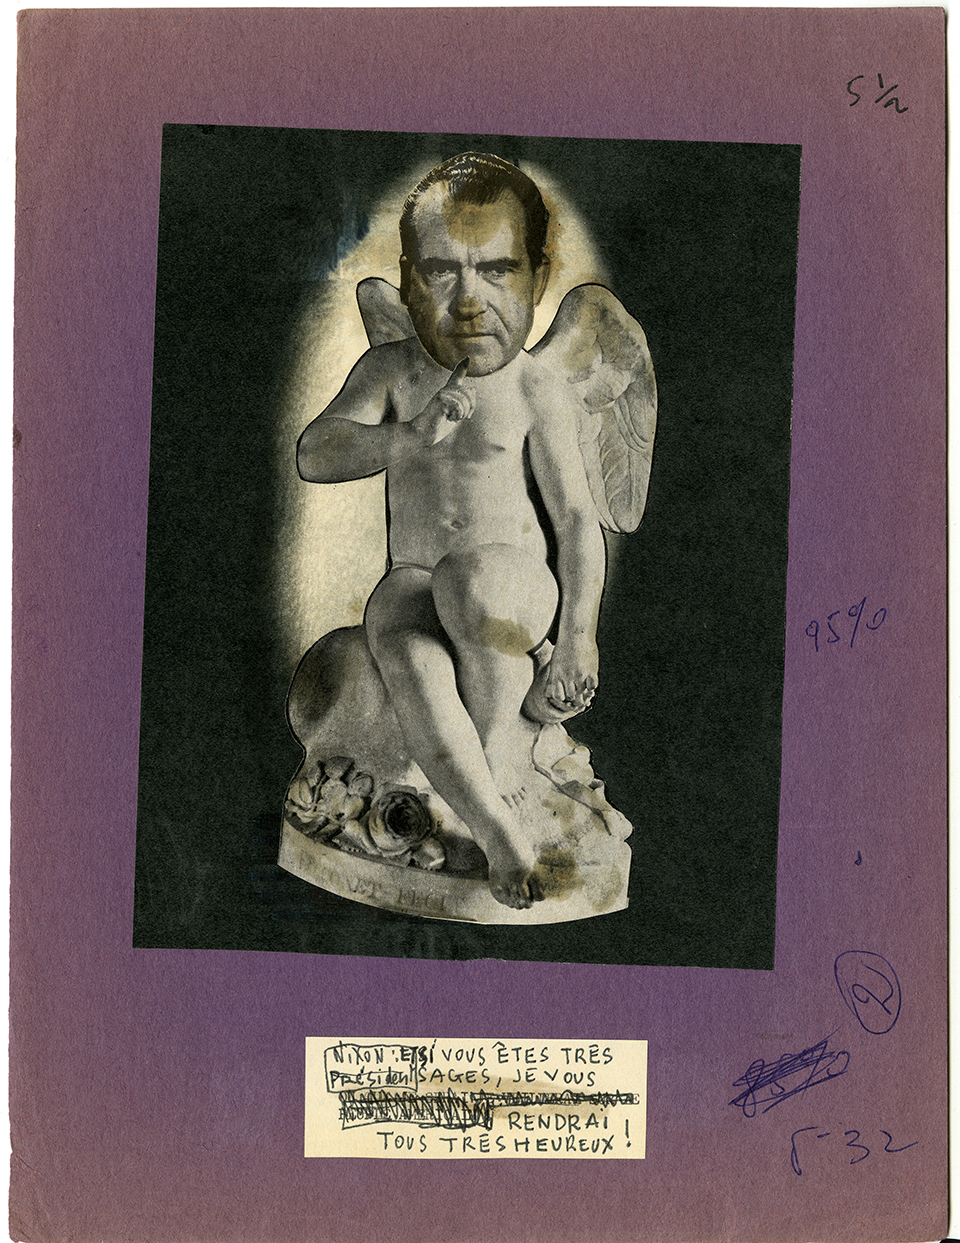 Photomontage humoristique montrant Richard Nixon et signé Jonathan Oka (pseudonyme de Pierre Barret) pour la revue La Semaine. 1968. Archives UdeM, P0468-D-5-D0007-P0042